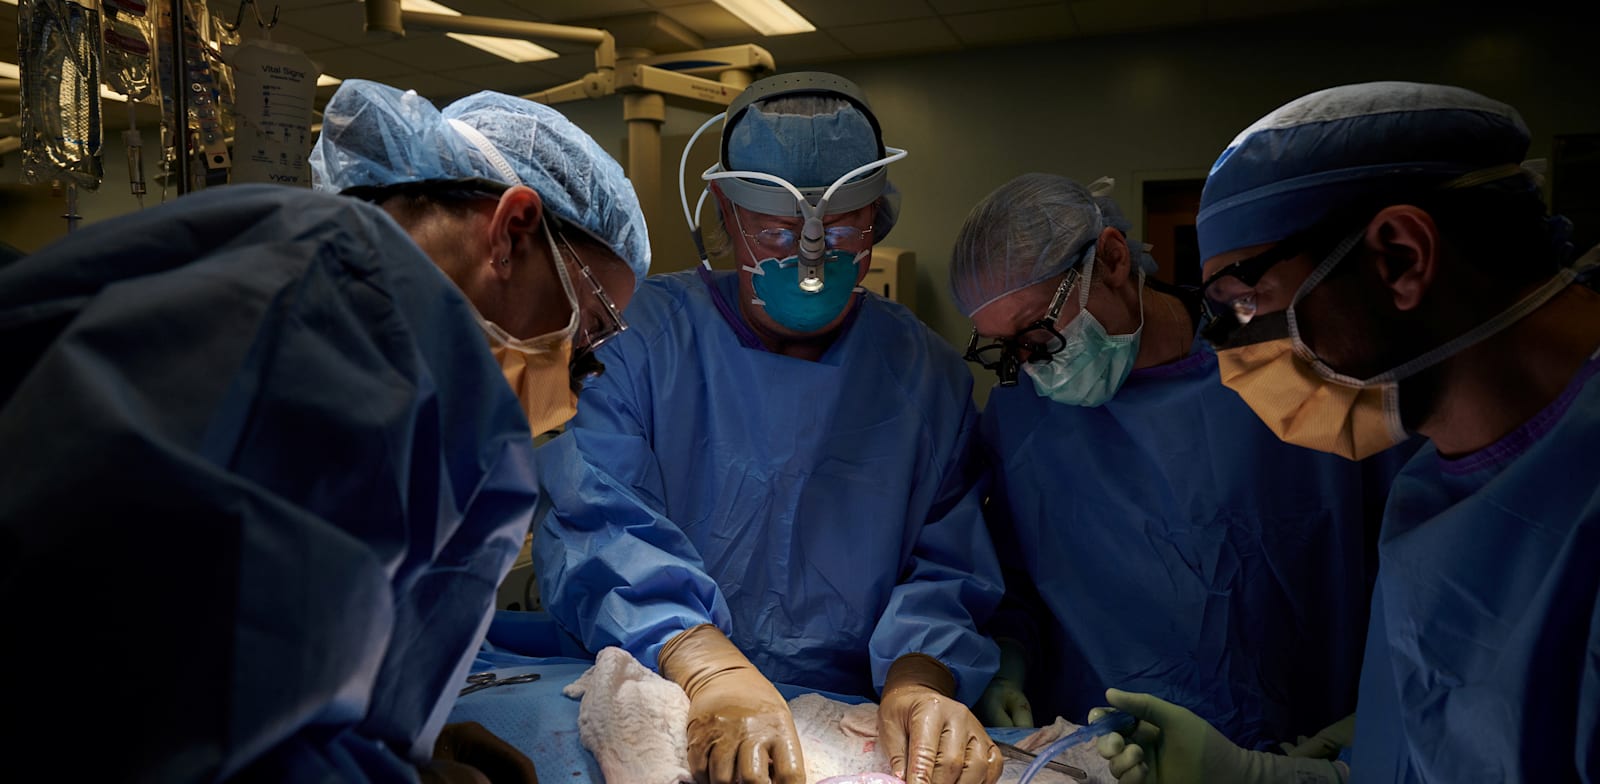 רופאים משתילים כליה של חזיר בגוף אדם, בחודש שעבר. מכון ההשתלות NYU Langone, נוי יורק / צילום: Reuters